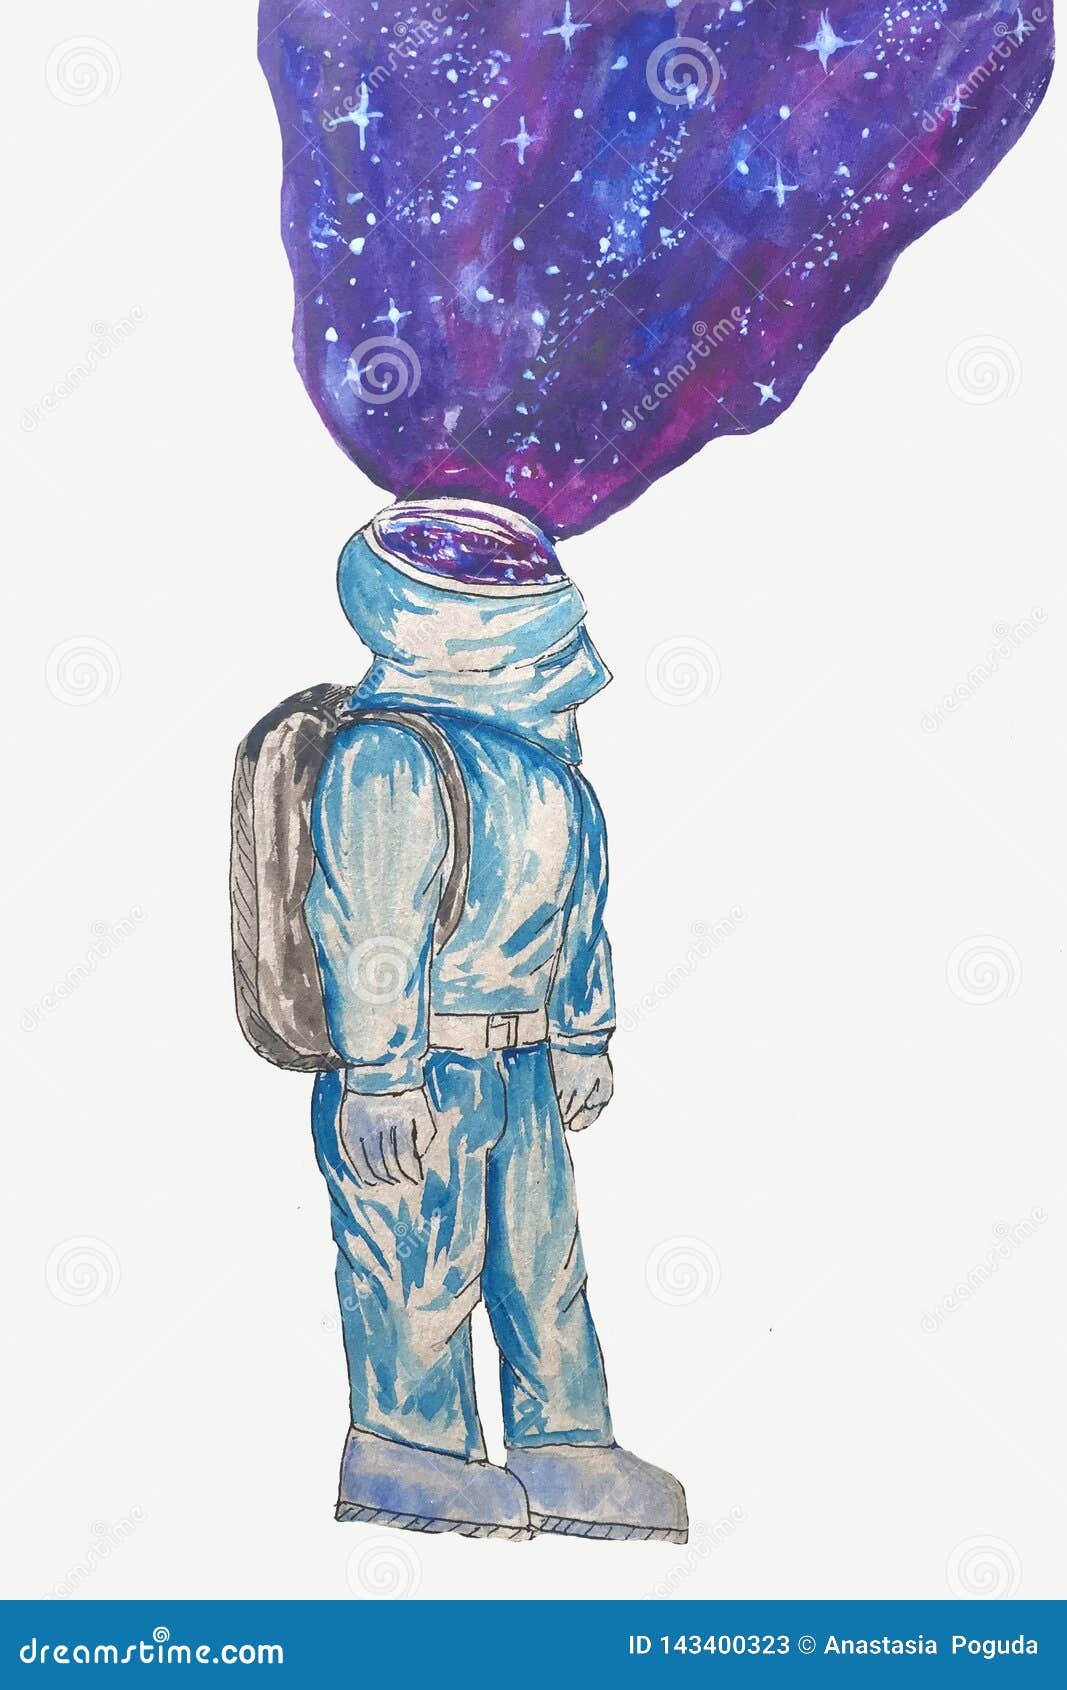 Personagem de ufo alienígena azul de desenho animado em aquarela com  antenas